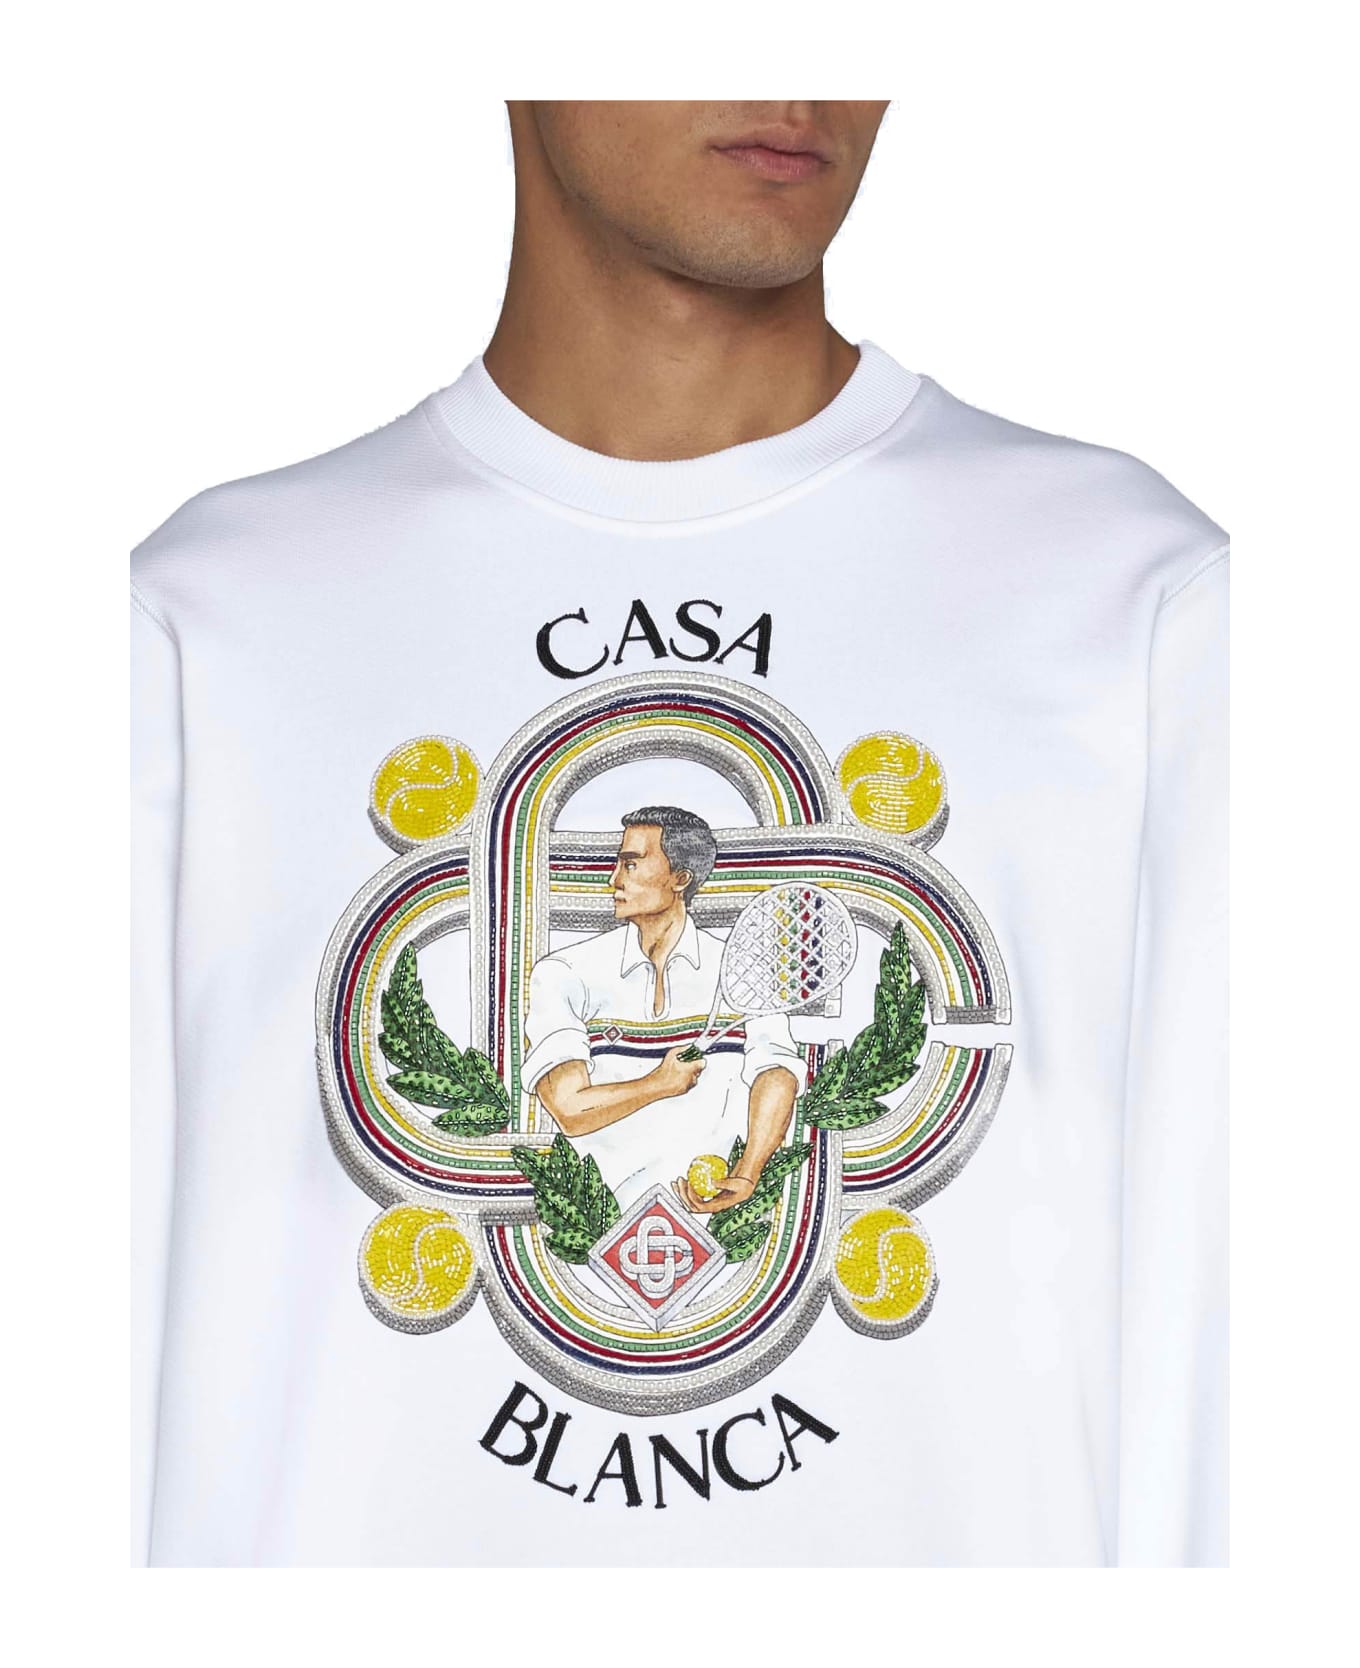 Casablanca Sweater - Le joueur